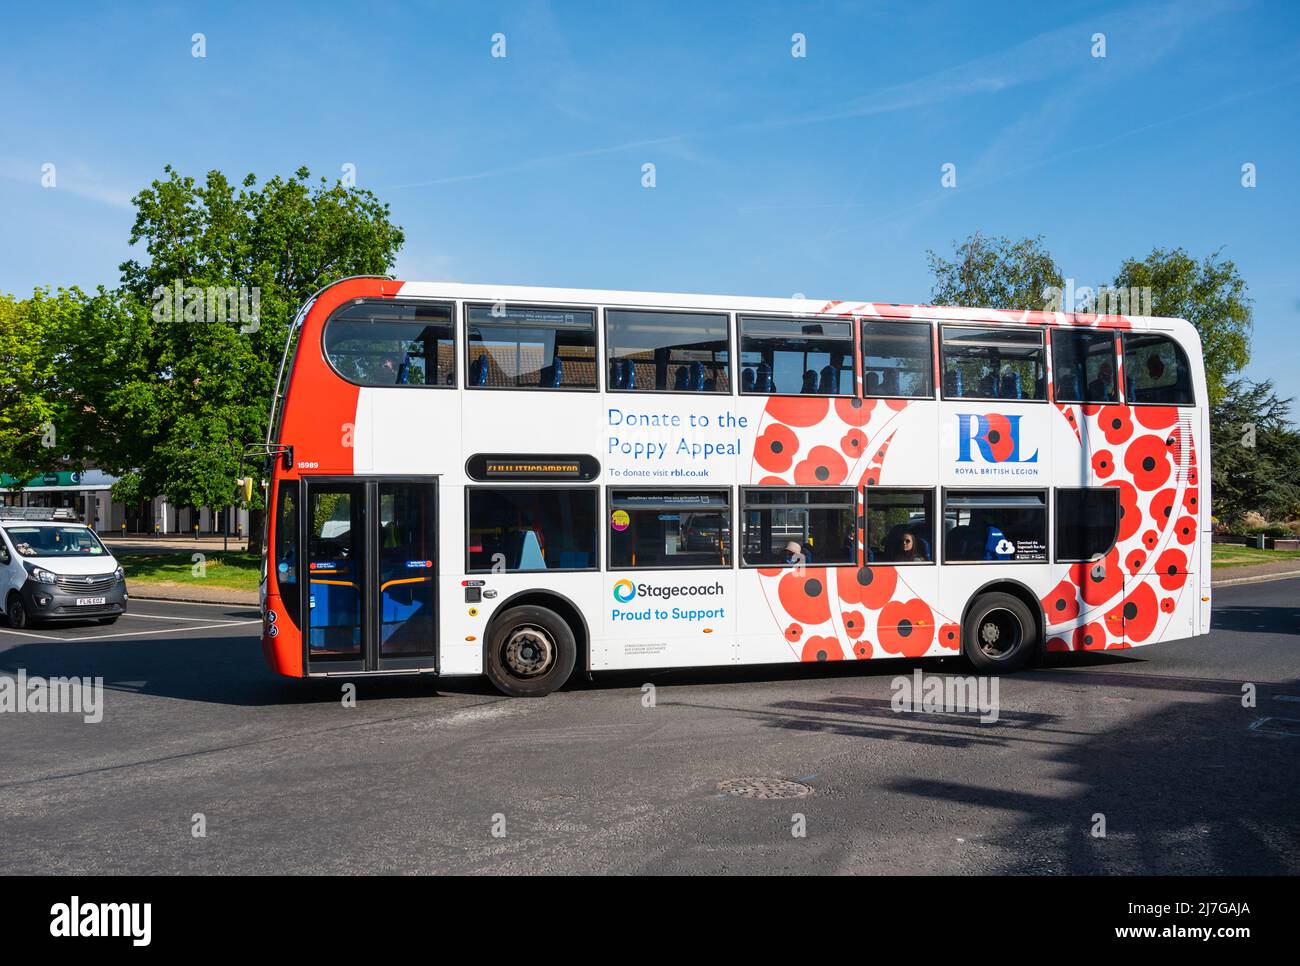 700 Coastliner Stagecoach autobus dipinto in rosso e bianco livrea con papaveri per mostrare il supporto per 'orgoglioso di donare' appeal papavero, Royal British Legion, Regno Unito. Foto Stock